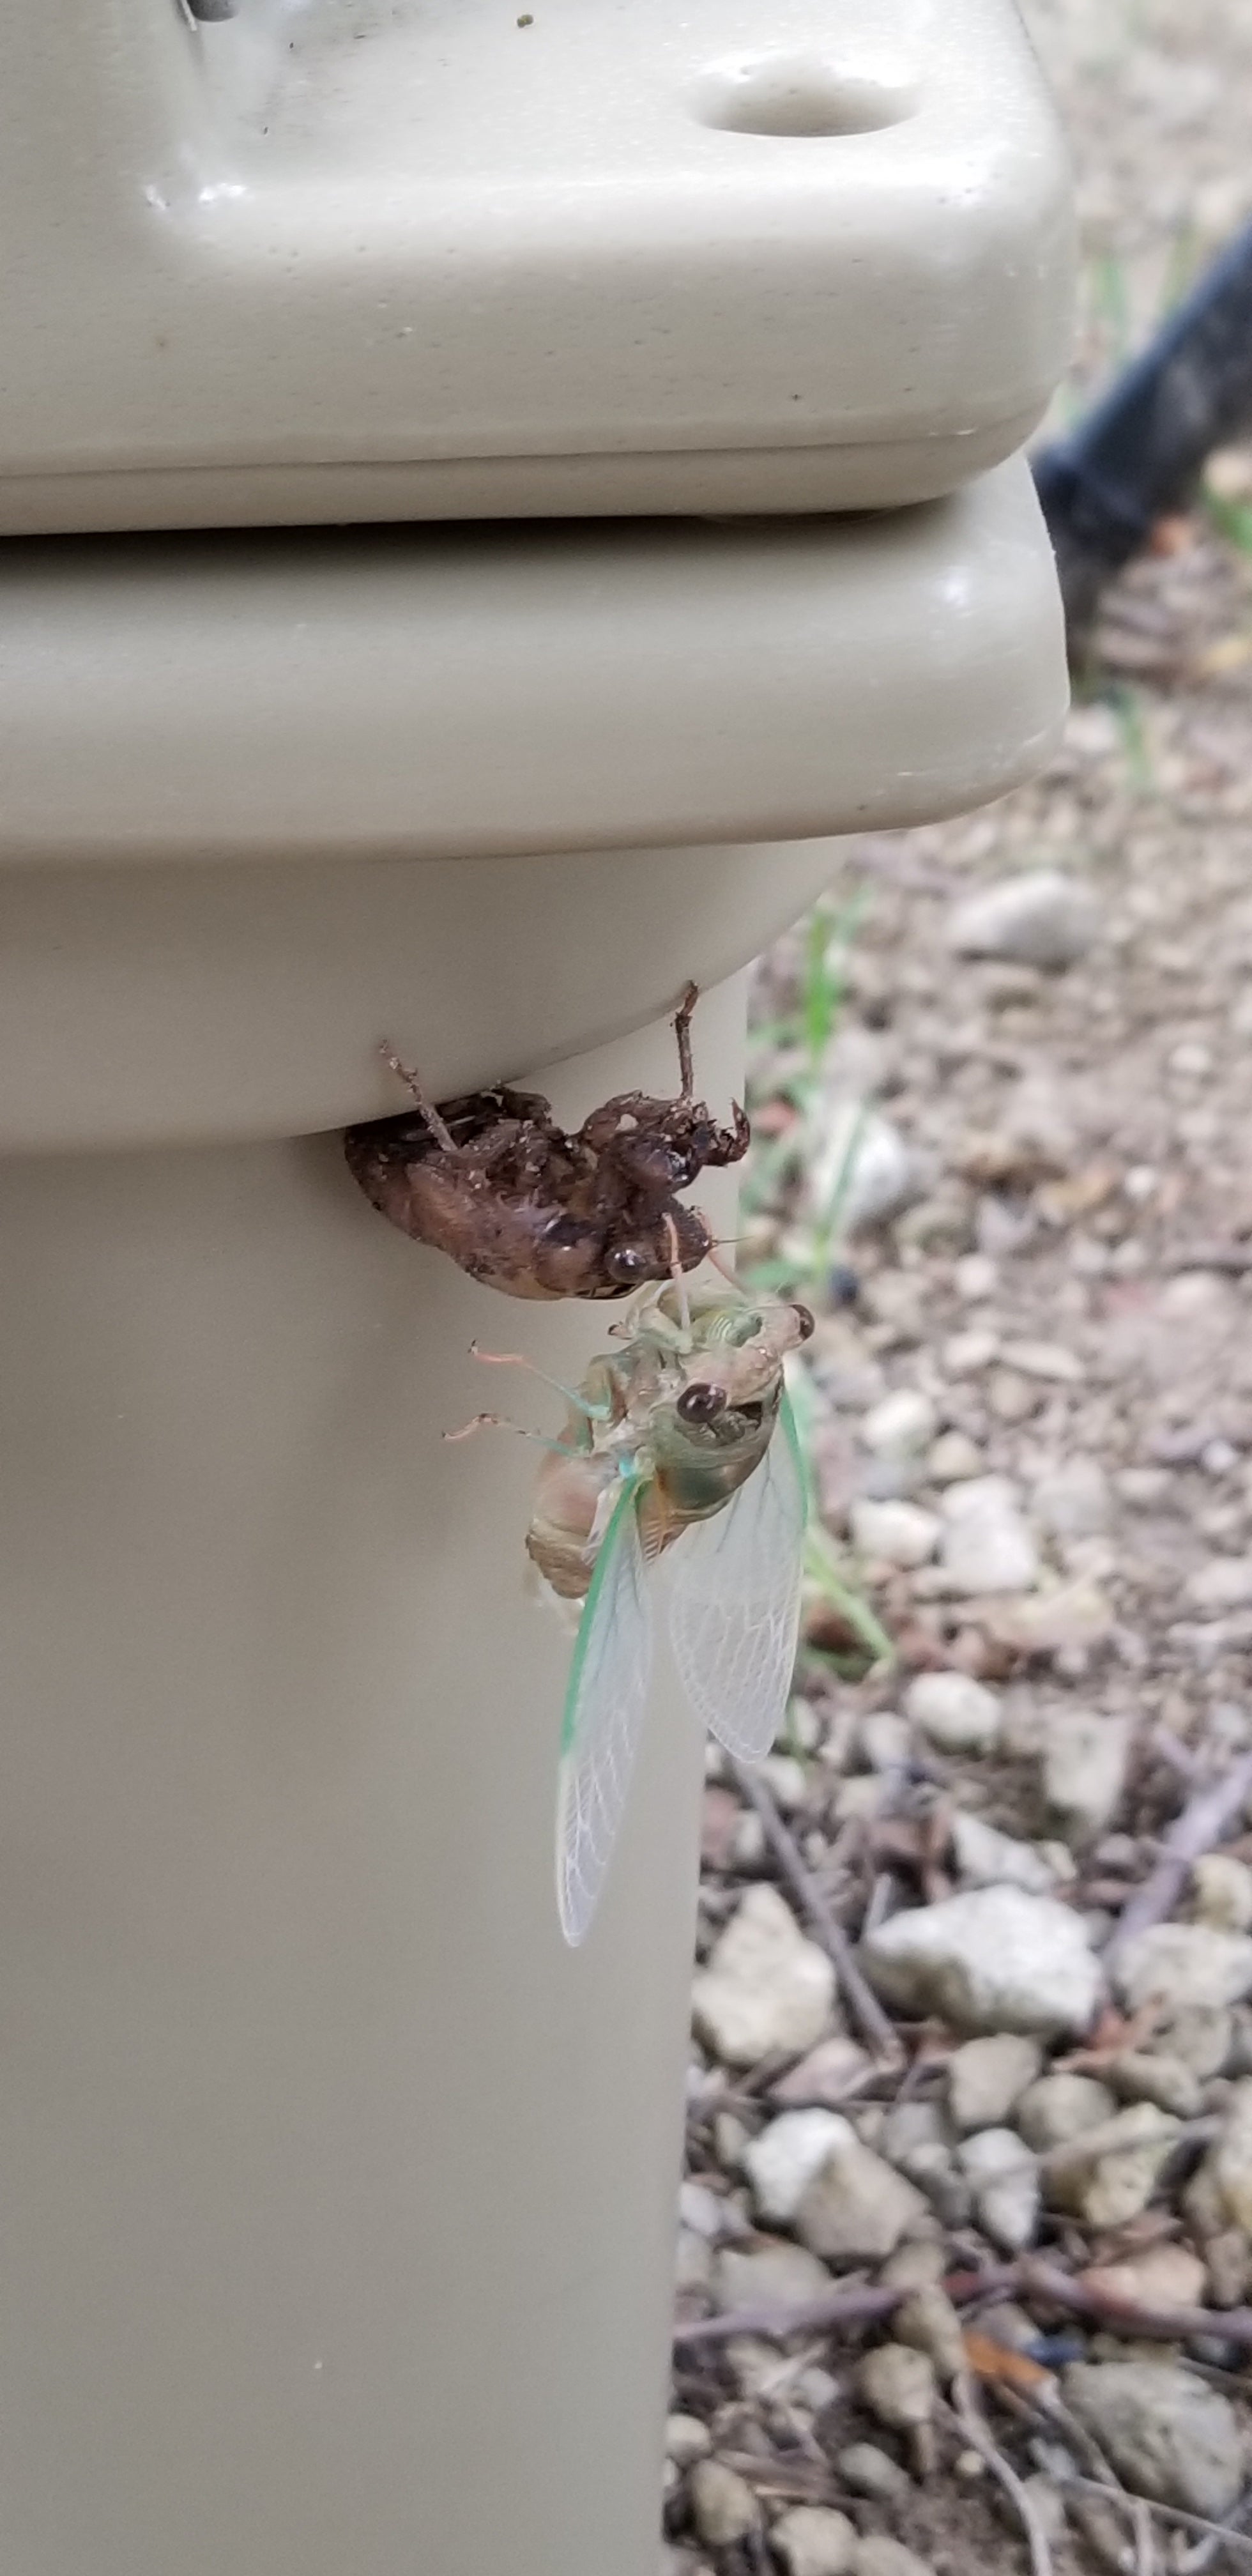 Shedding Cicada